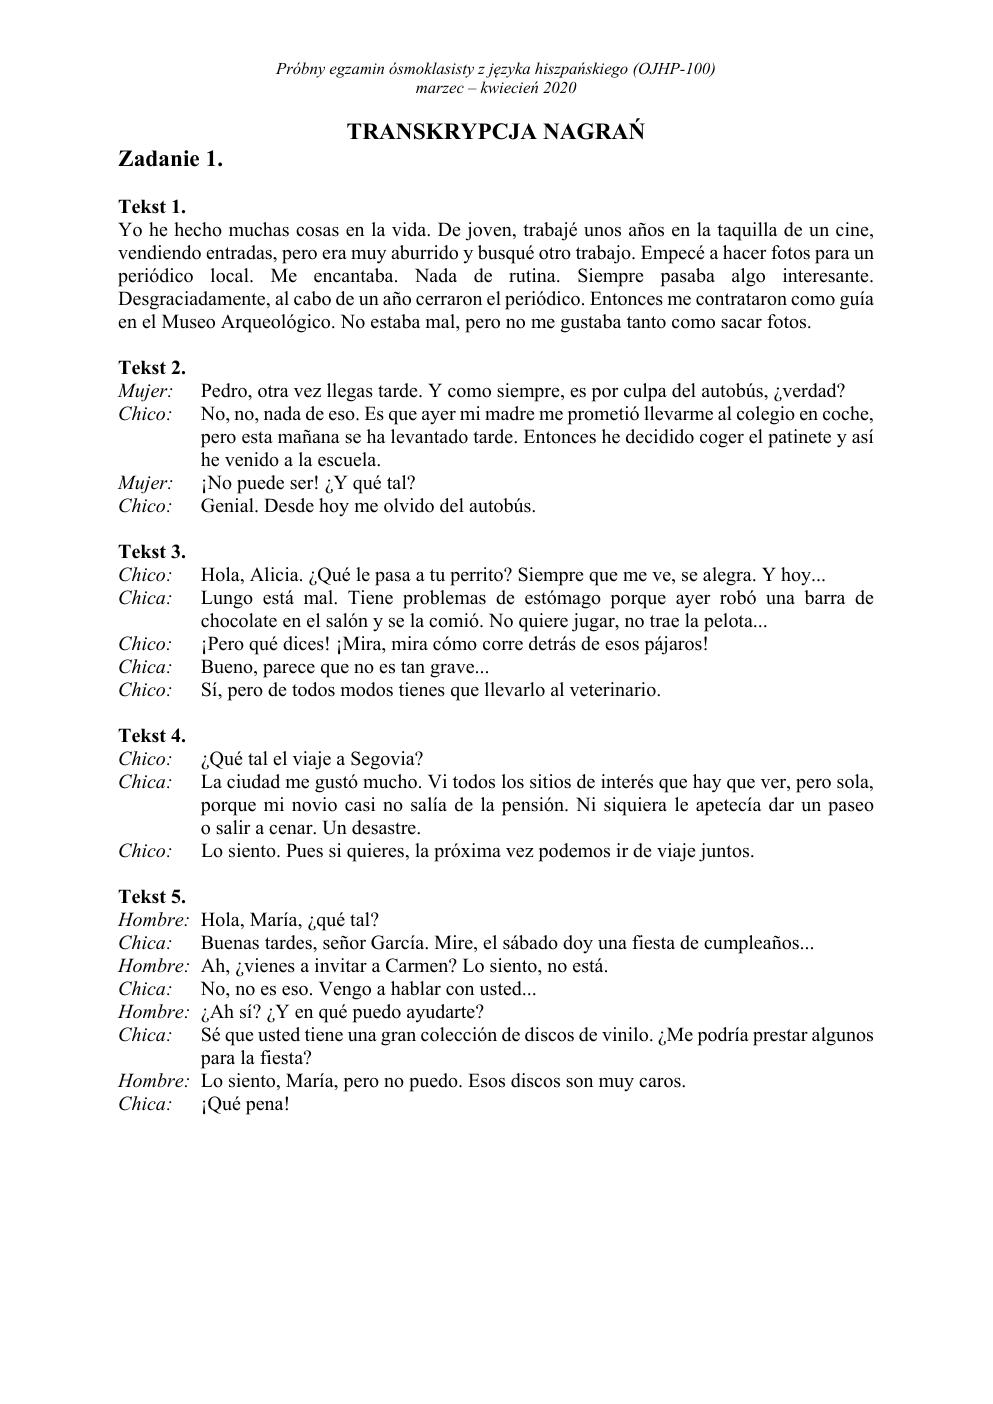 transkrypcja - hiszpański - egzamin ósmoklasisty 2020 próbny-1